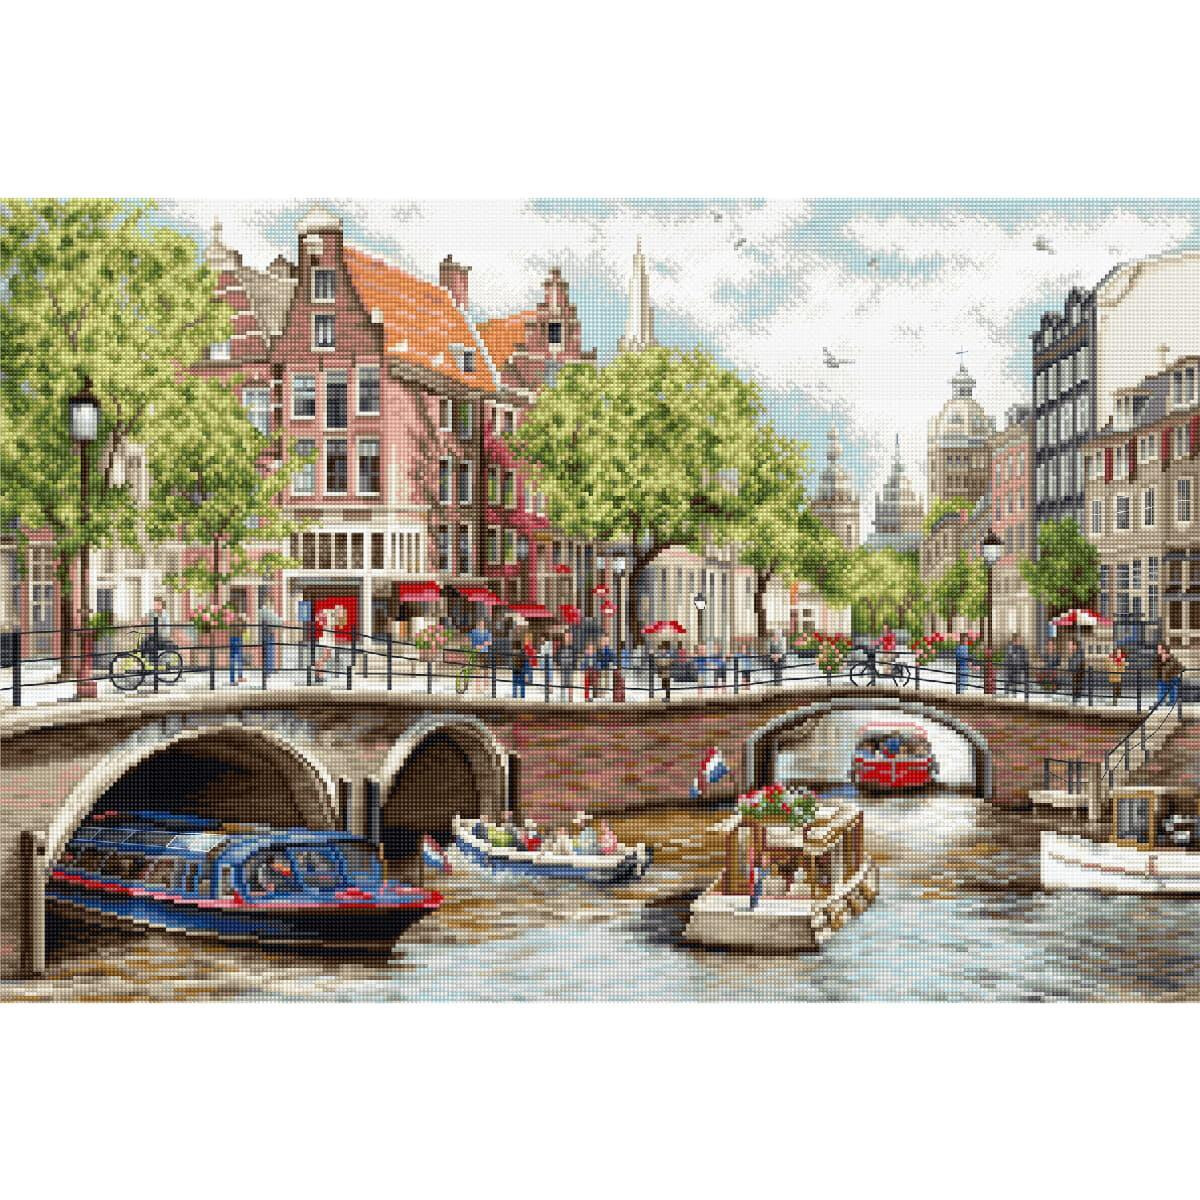 Una animada escena en un canal de Ámsterdam...